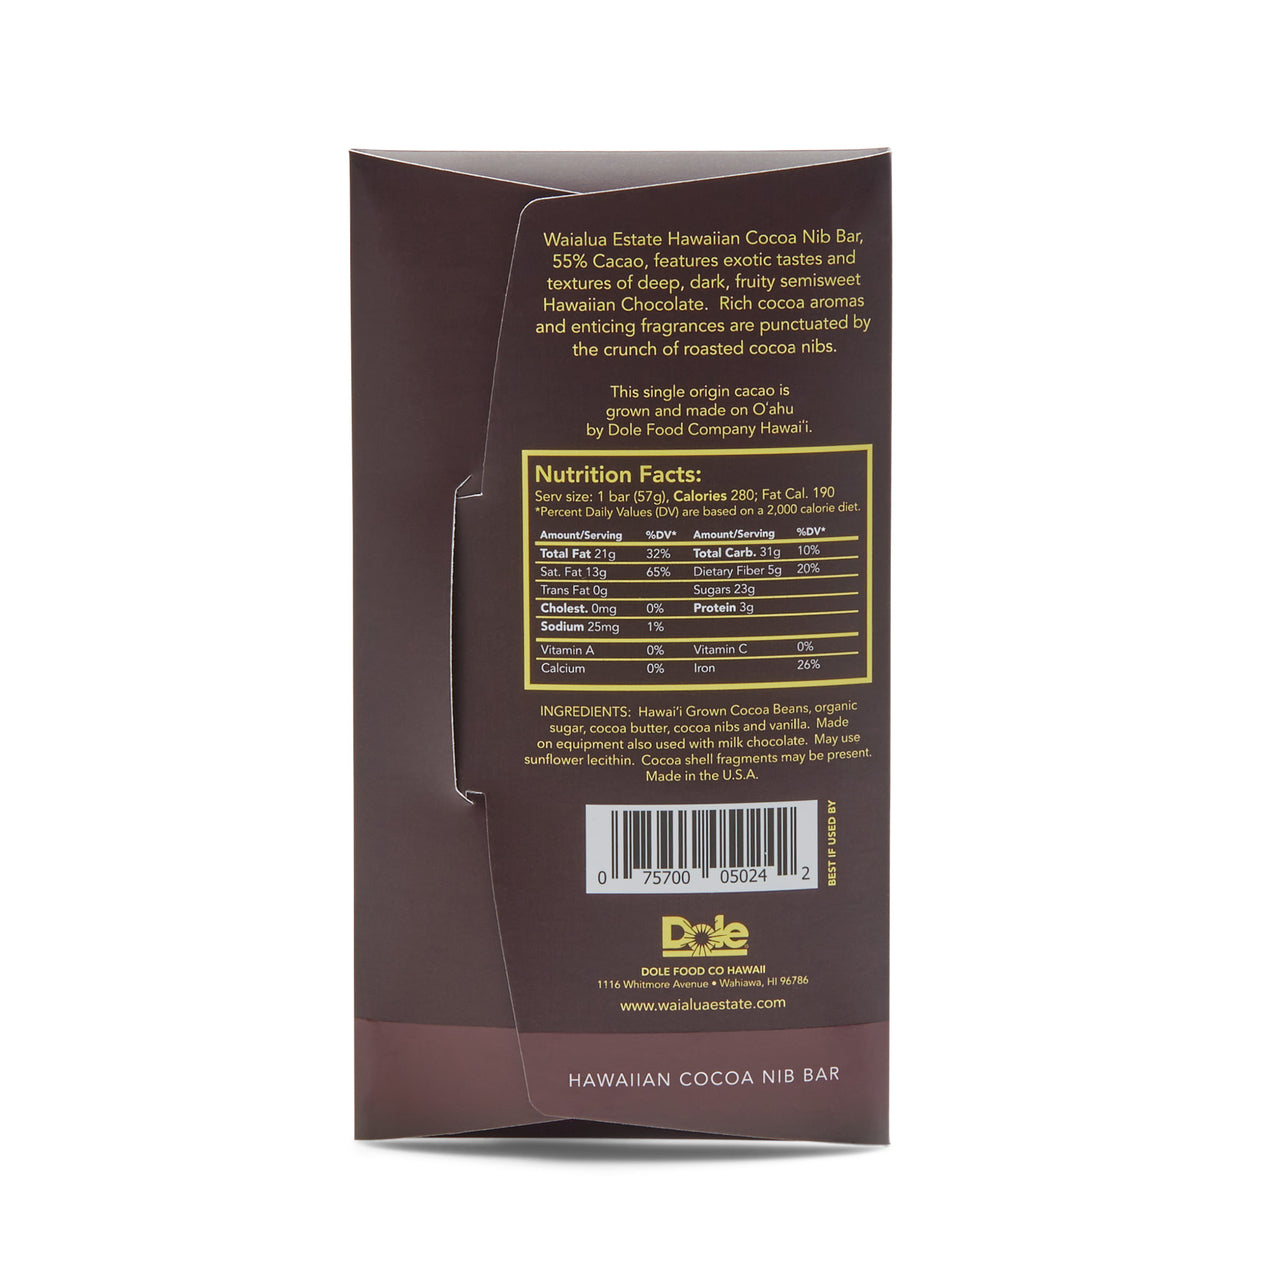 55% Cacao Hawaiian Cocoa Nib Bar Back of Package